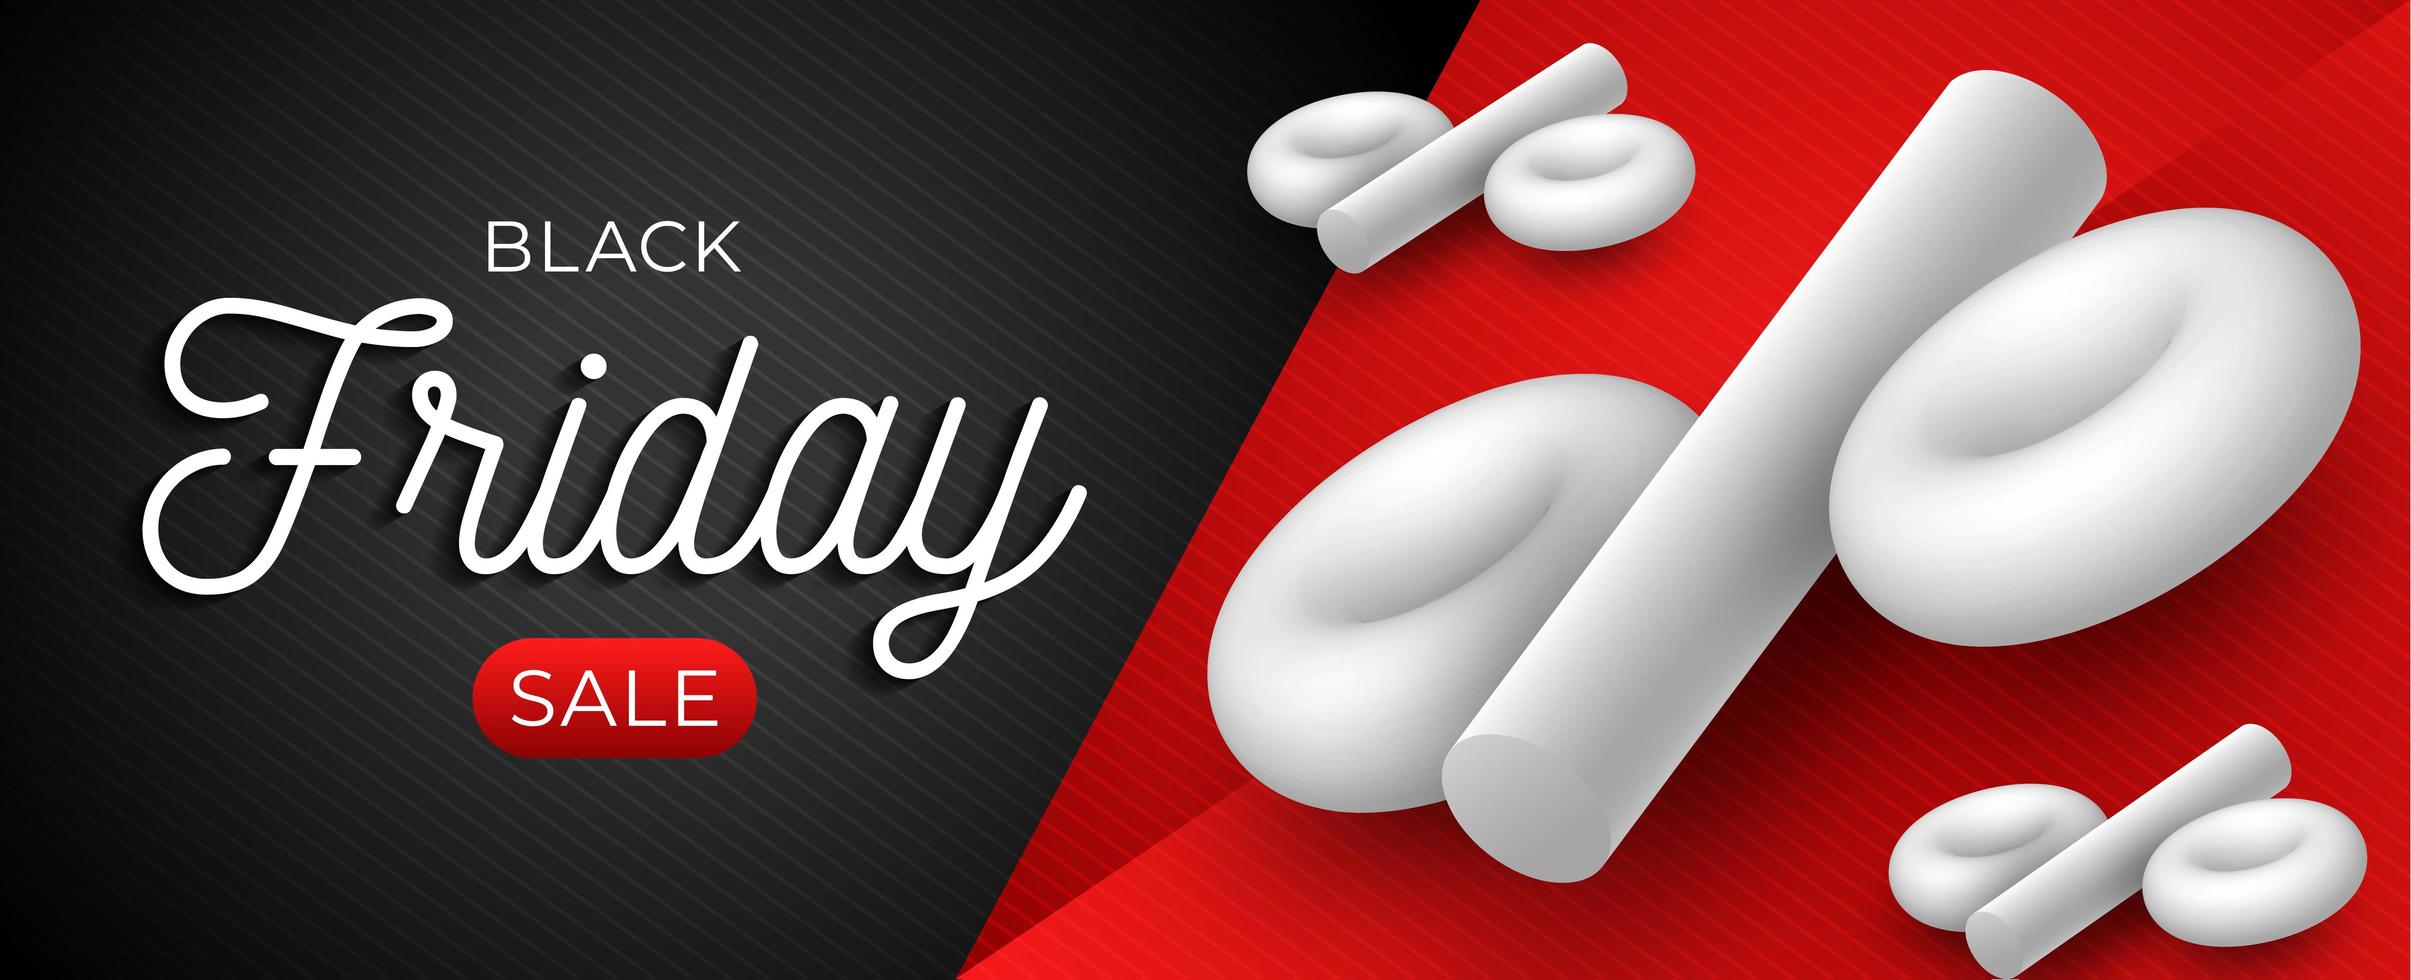 zwarte vrijdag verkoop horizontale sjabloon met wit 3d percentagesymbool op zwarte en rode achtergrond. vectorillustratie met plaats voor tekst vector